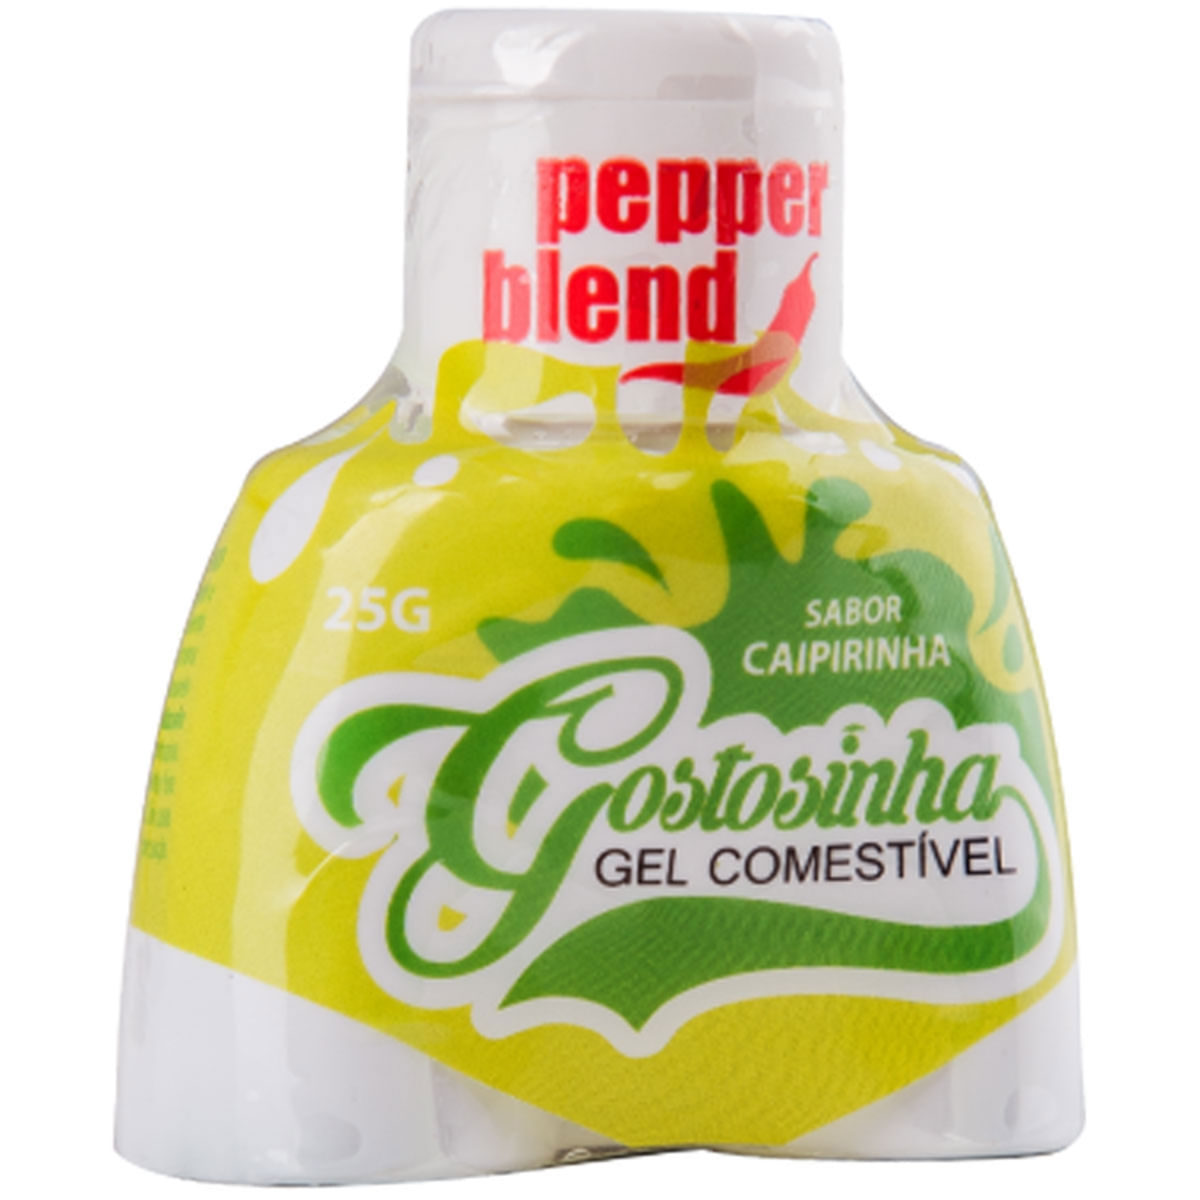 Gostosinha Gel Comestível Caipirinha 30gr Pepper Blend